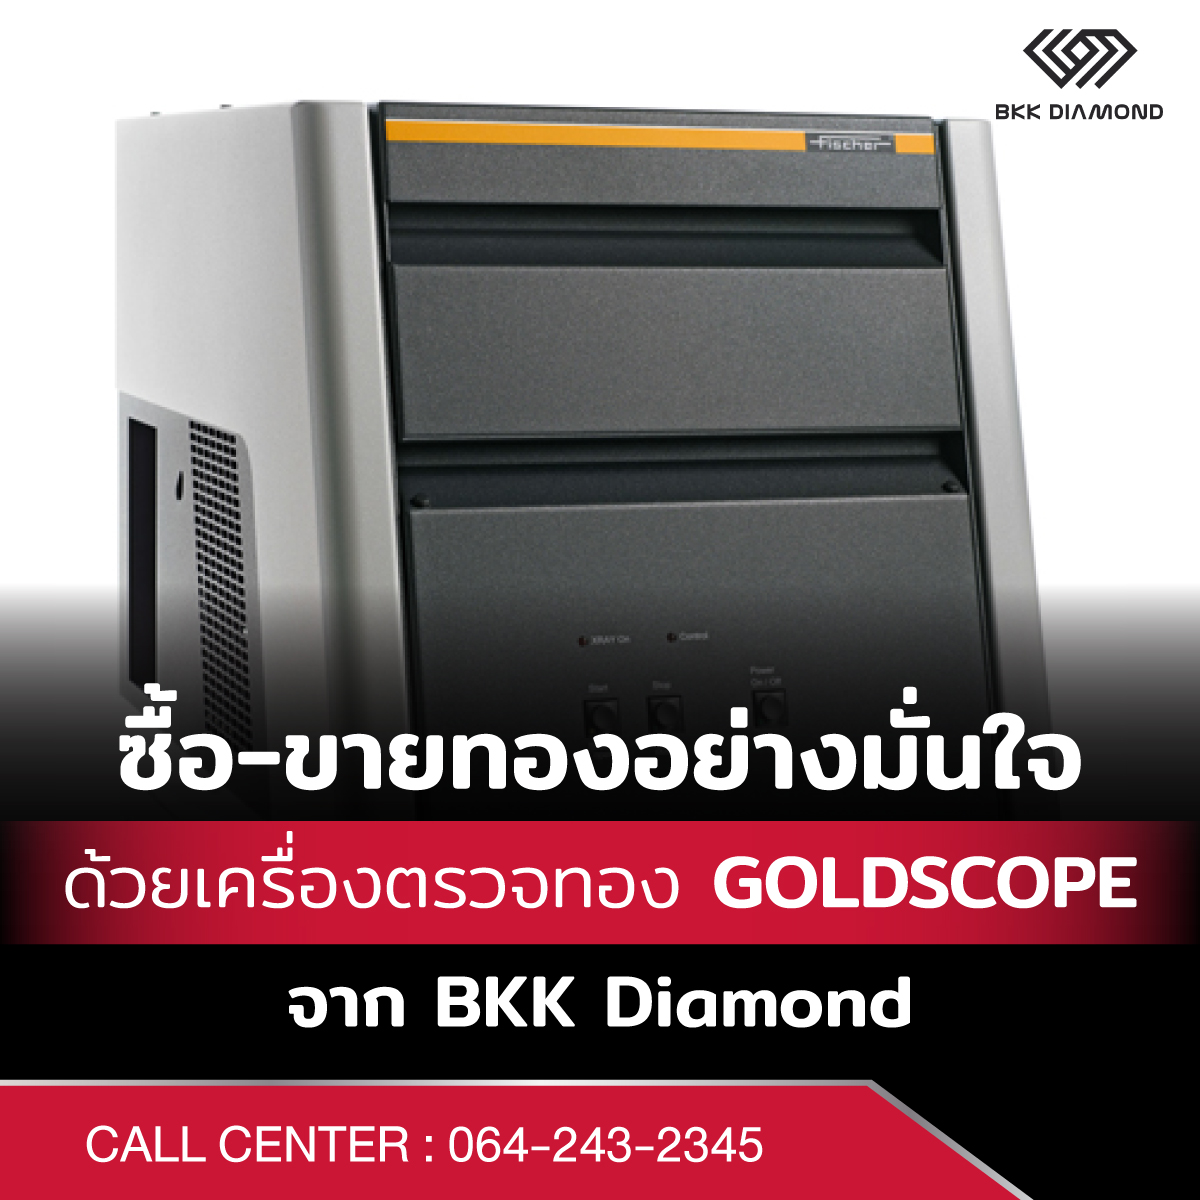 เครื่องตรวจทอง GOLDSCOPE จาก BKK Diamond ซื้อ-ขายทองอย่างมั่นใจด้วย